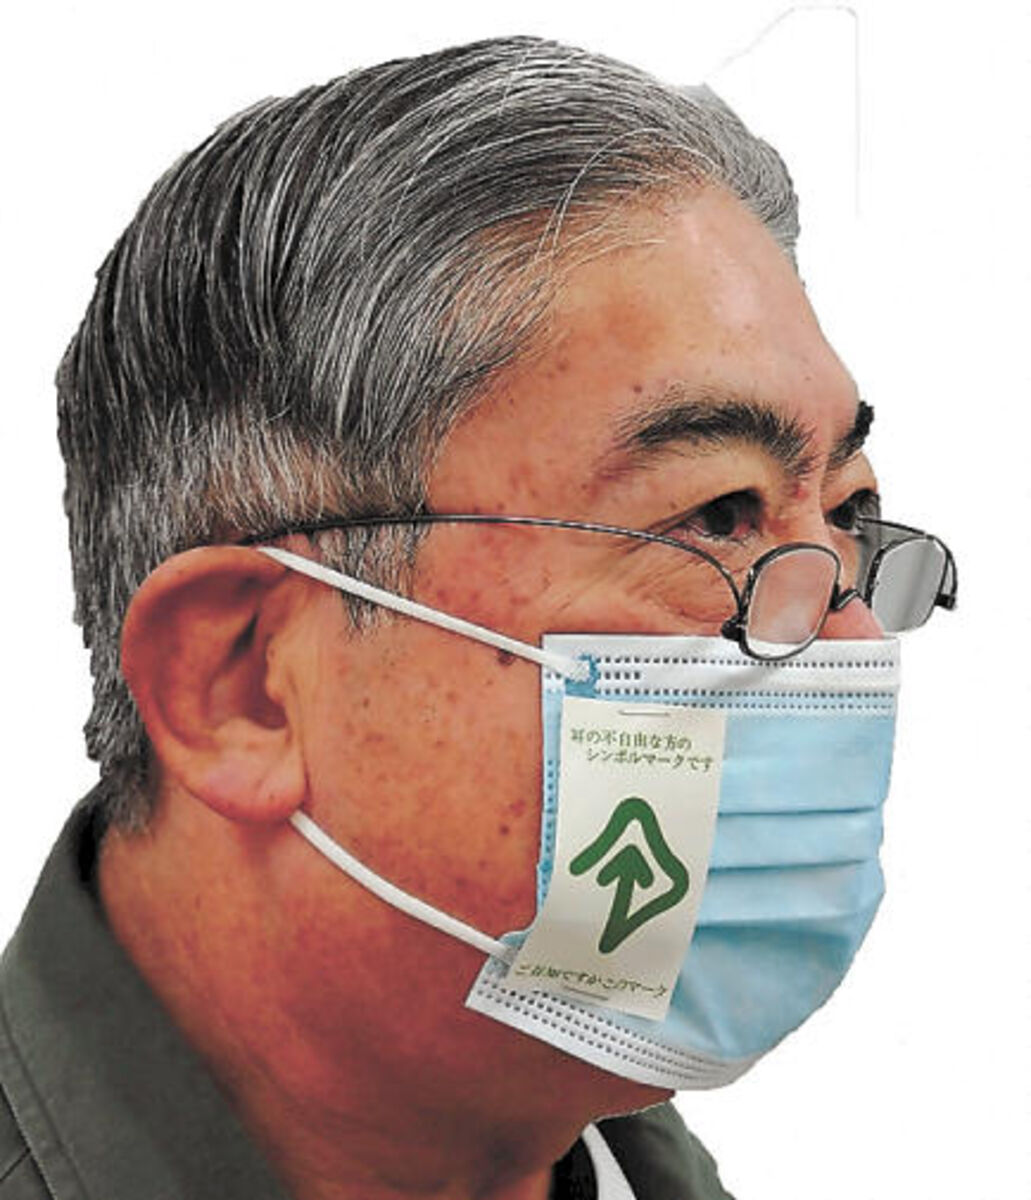 耳マーク 普及させよう マスクで聴覚障害者の意思疎通が困難に 河北新報オンラインニュース Online News